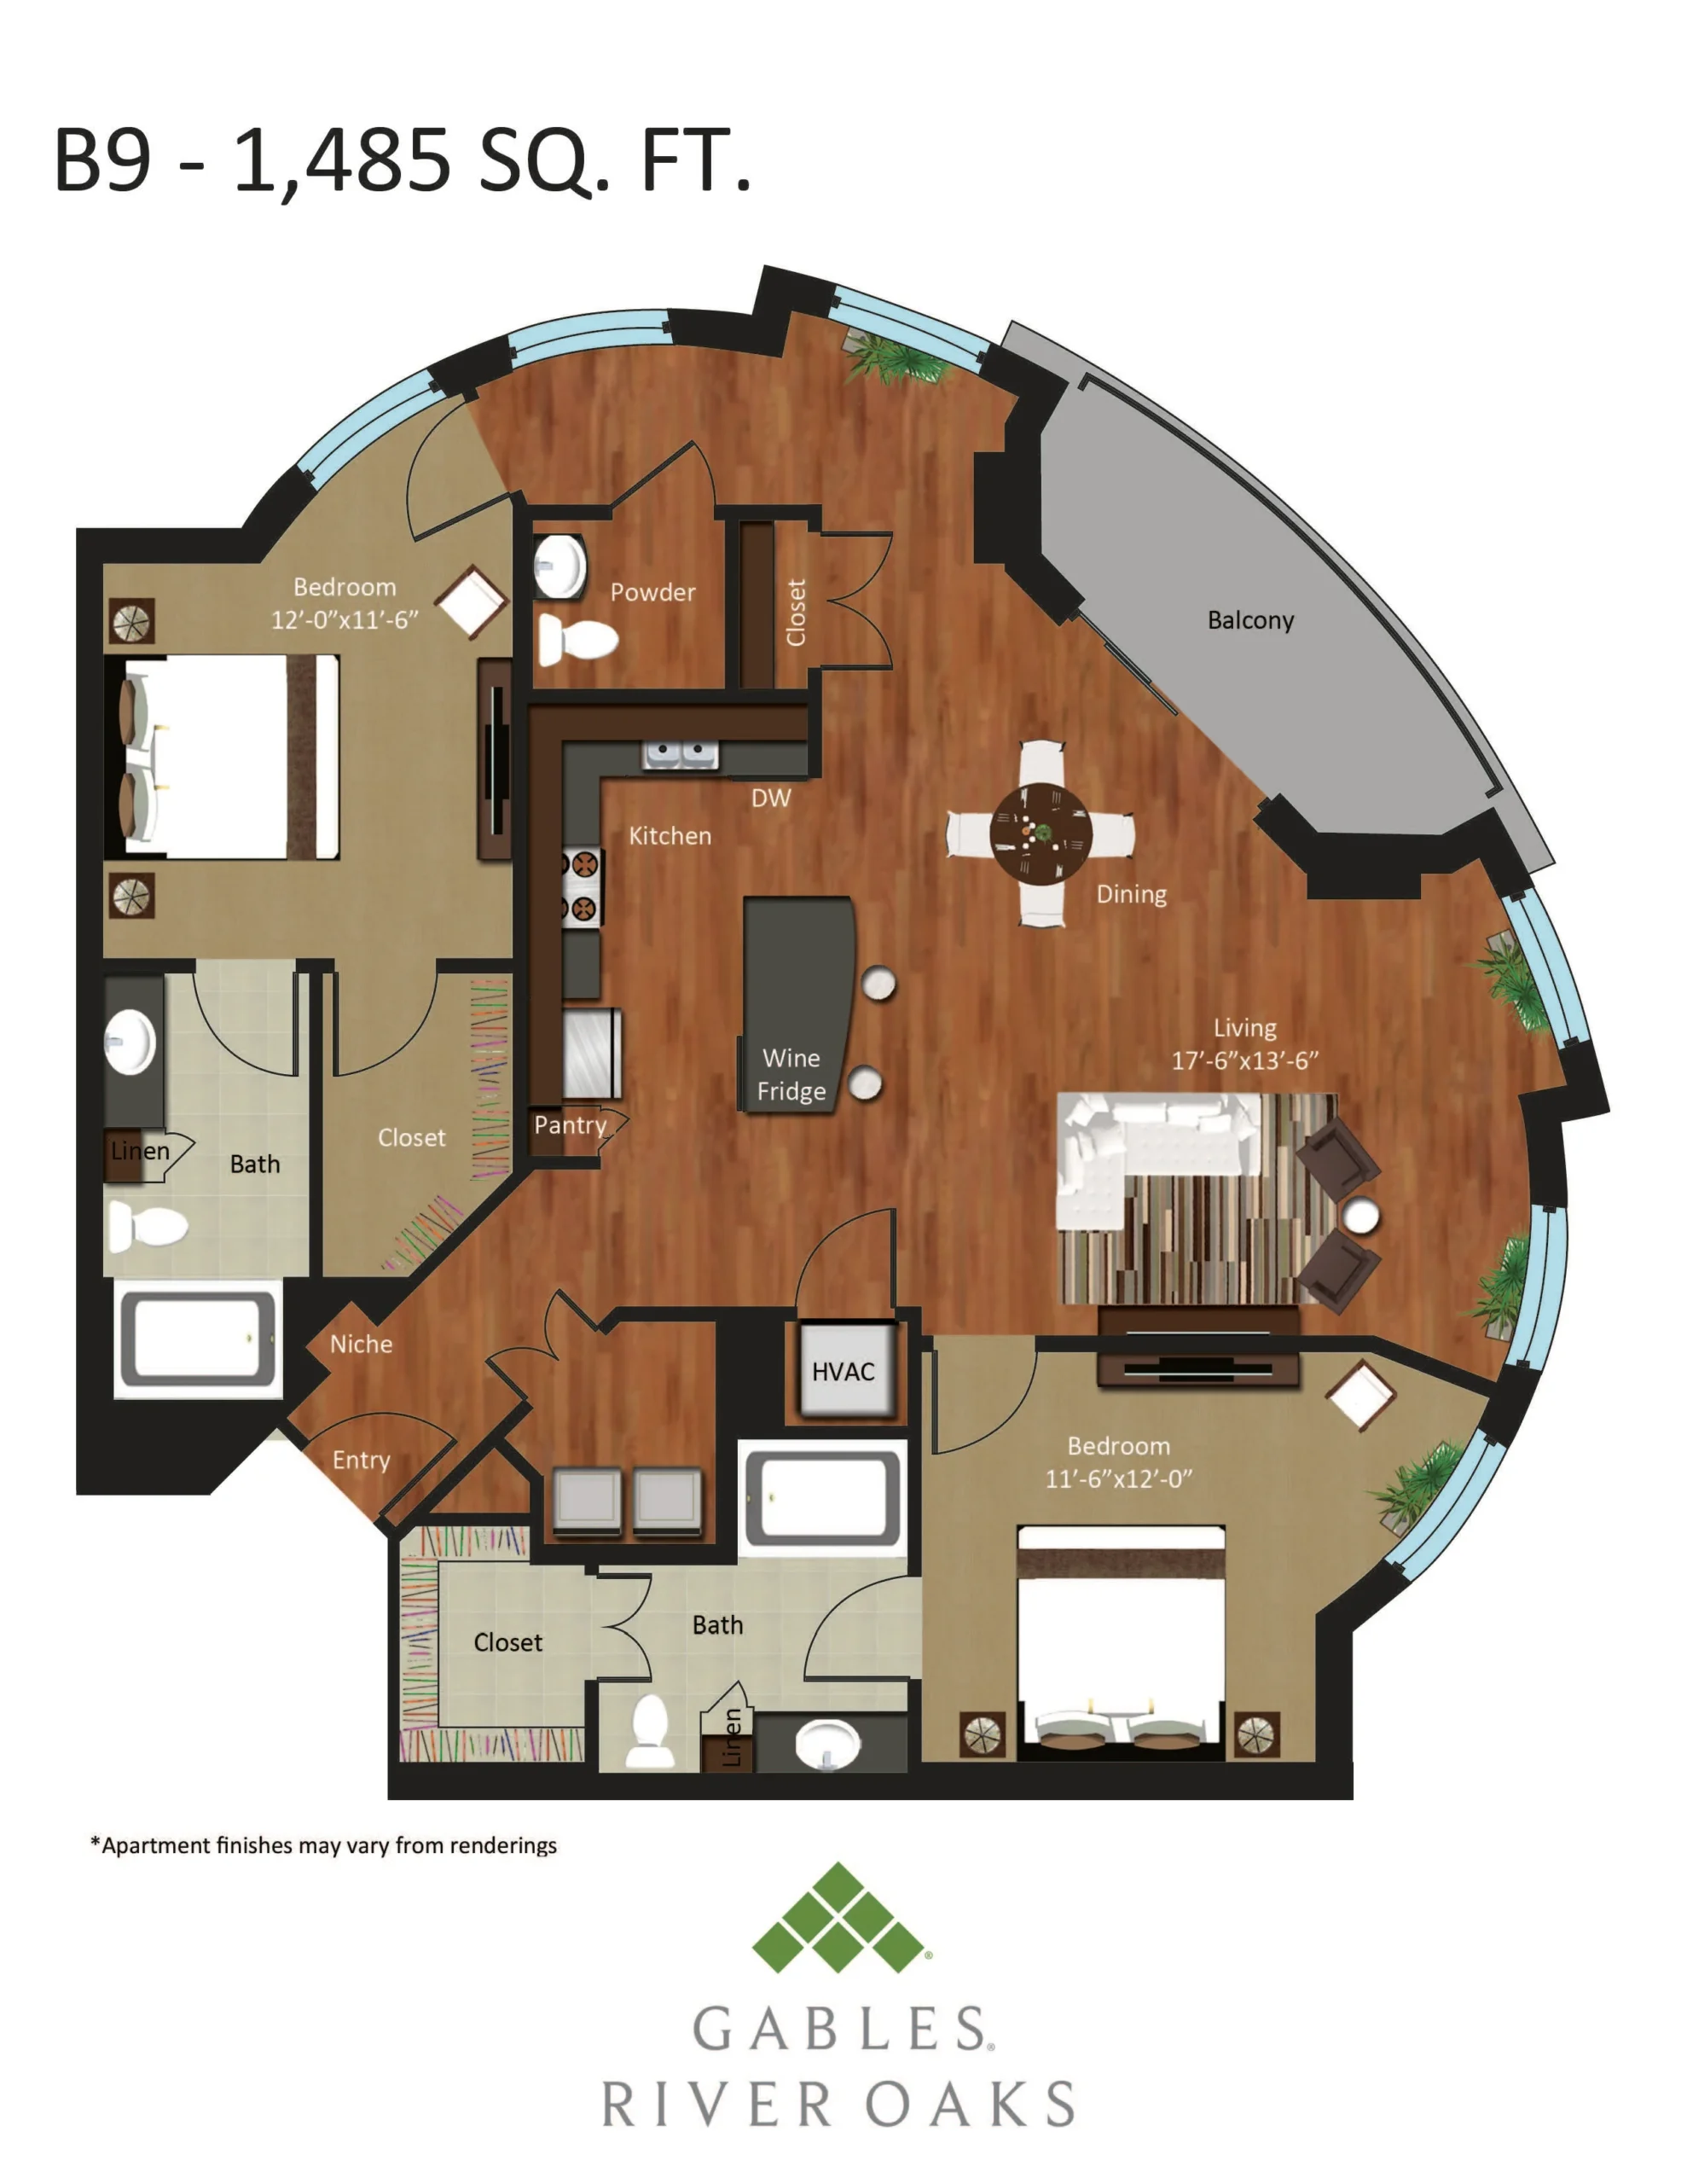 Gables River Oaks Floor Plan 24